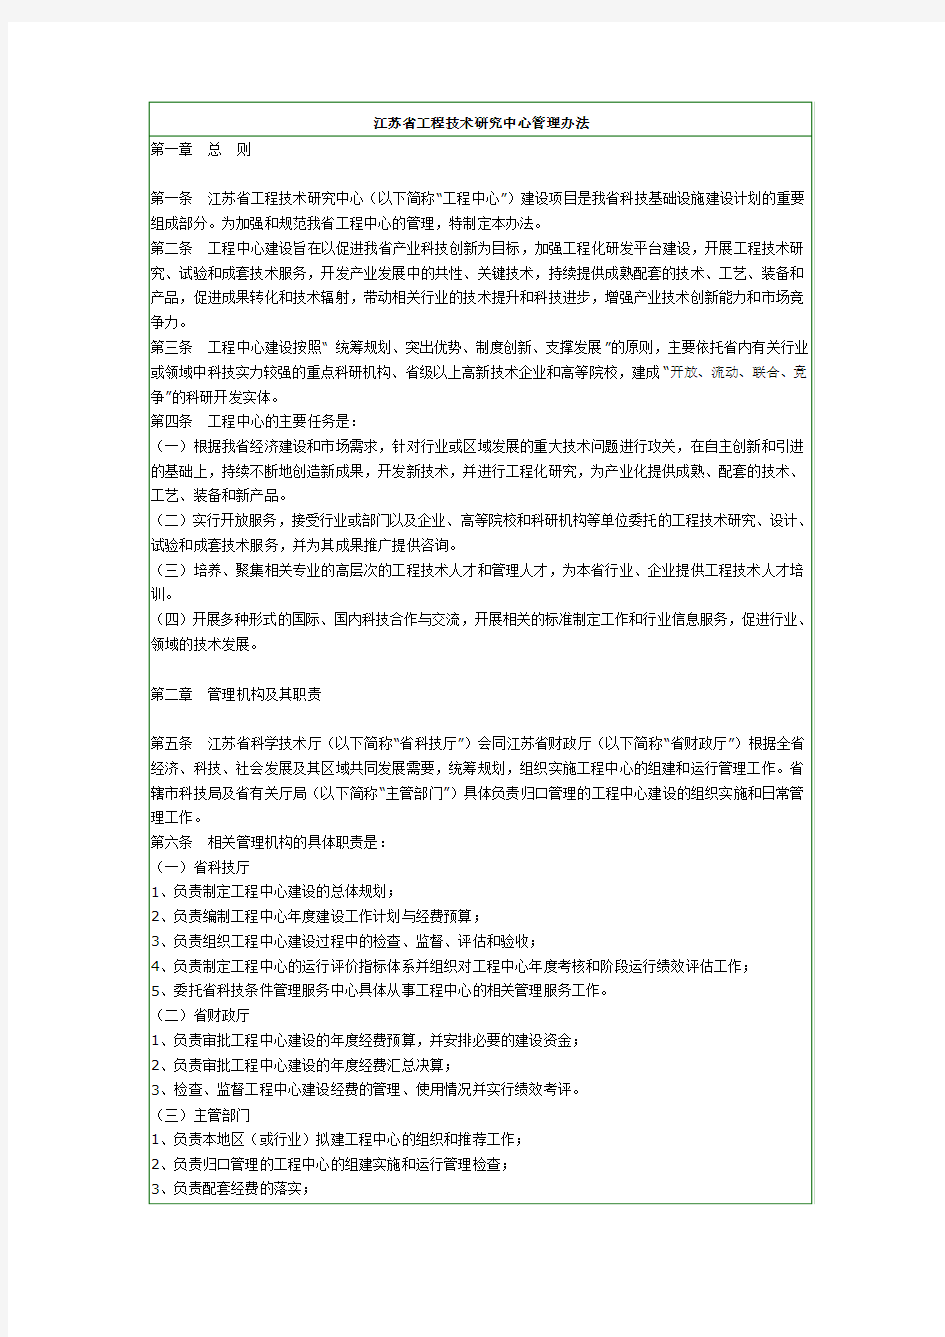 江苏省工程技术研究中心管理办法